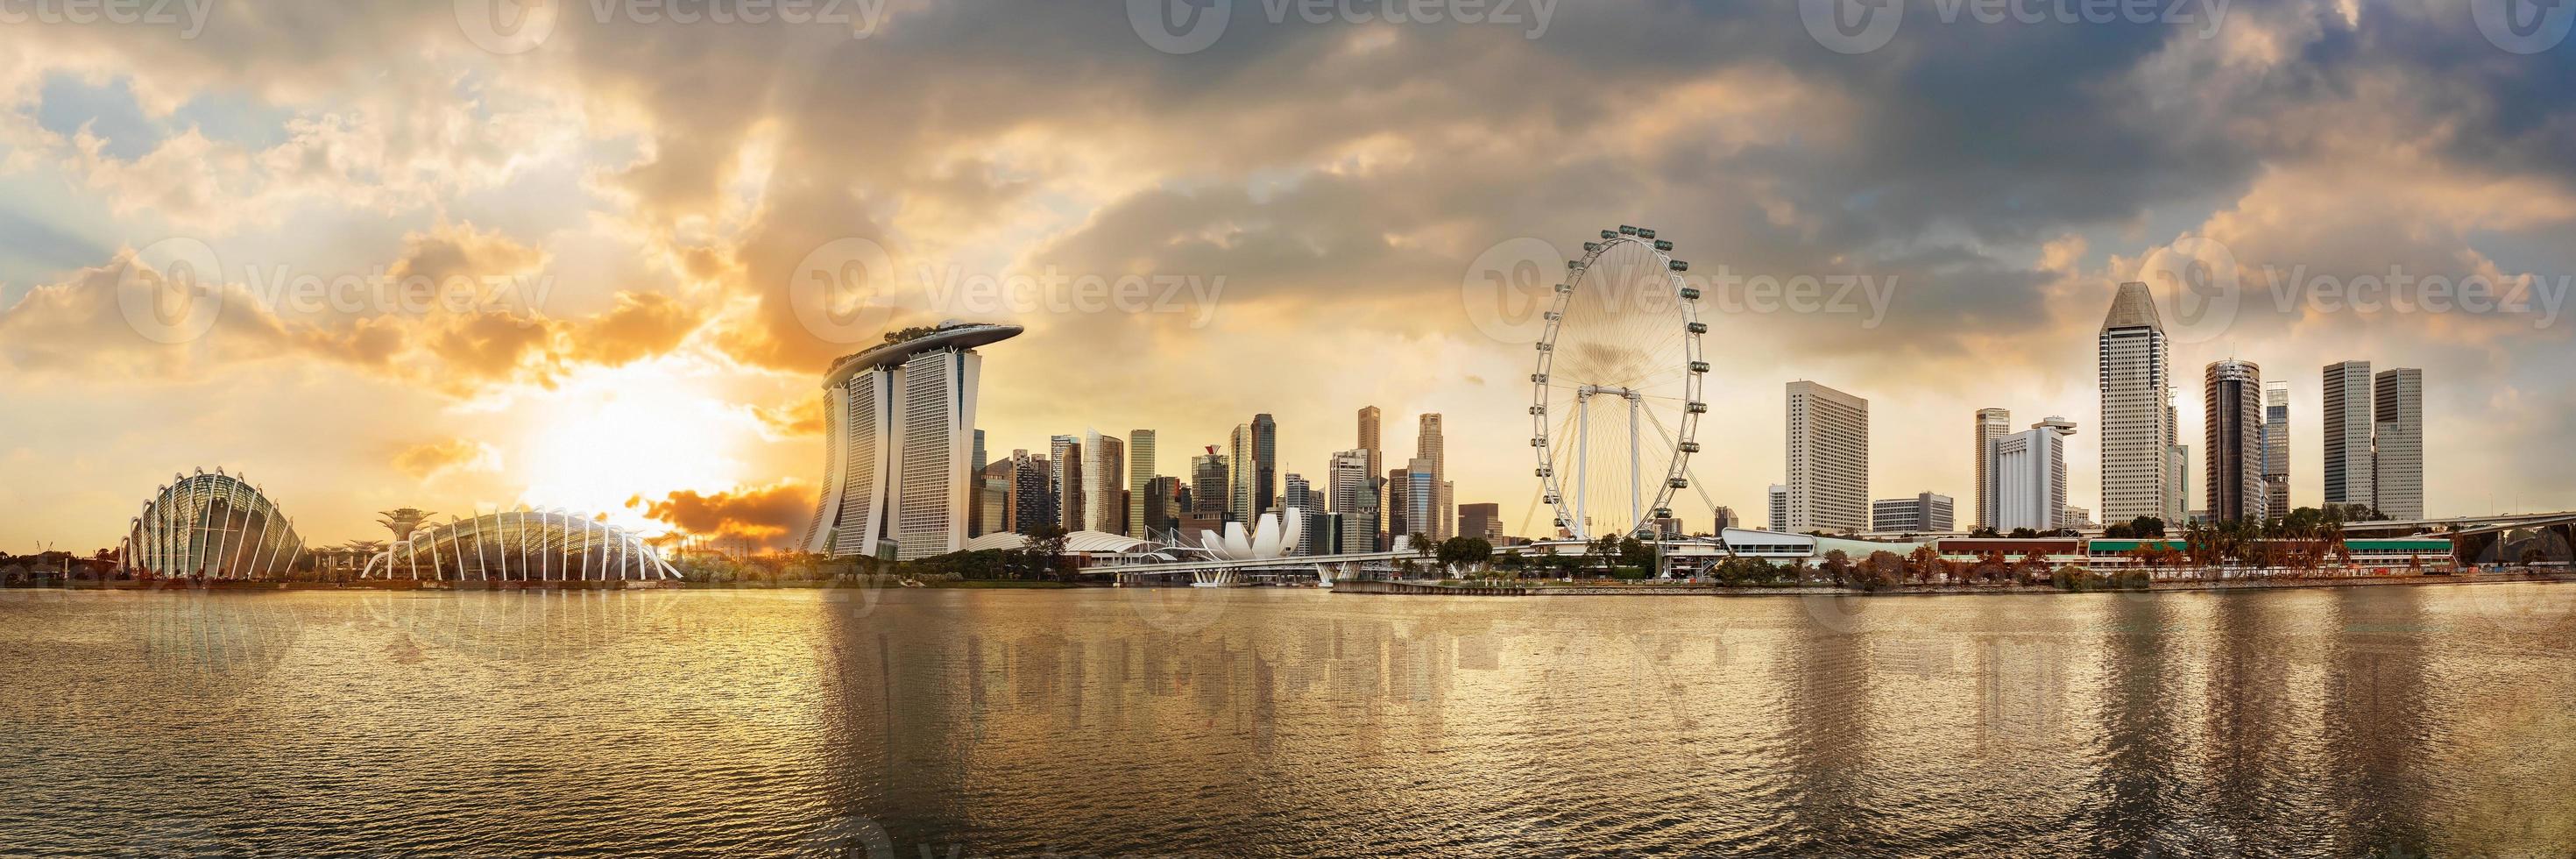 vista panorâmica do horizonte do distrito financeiro de Singapura na marina foto